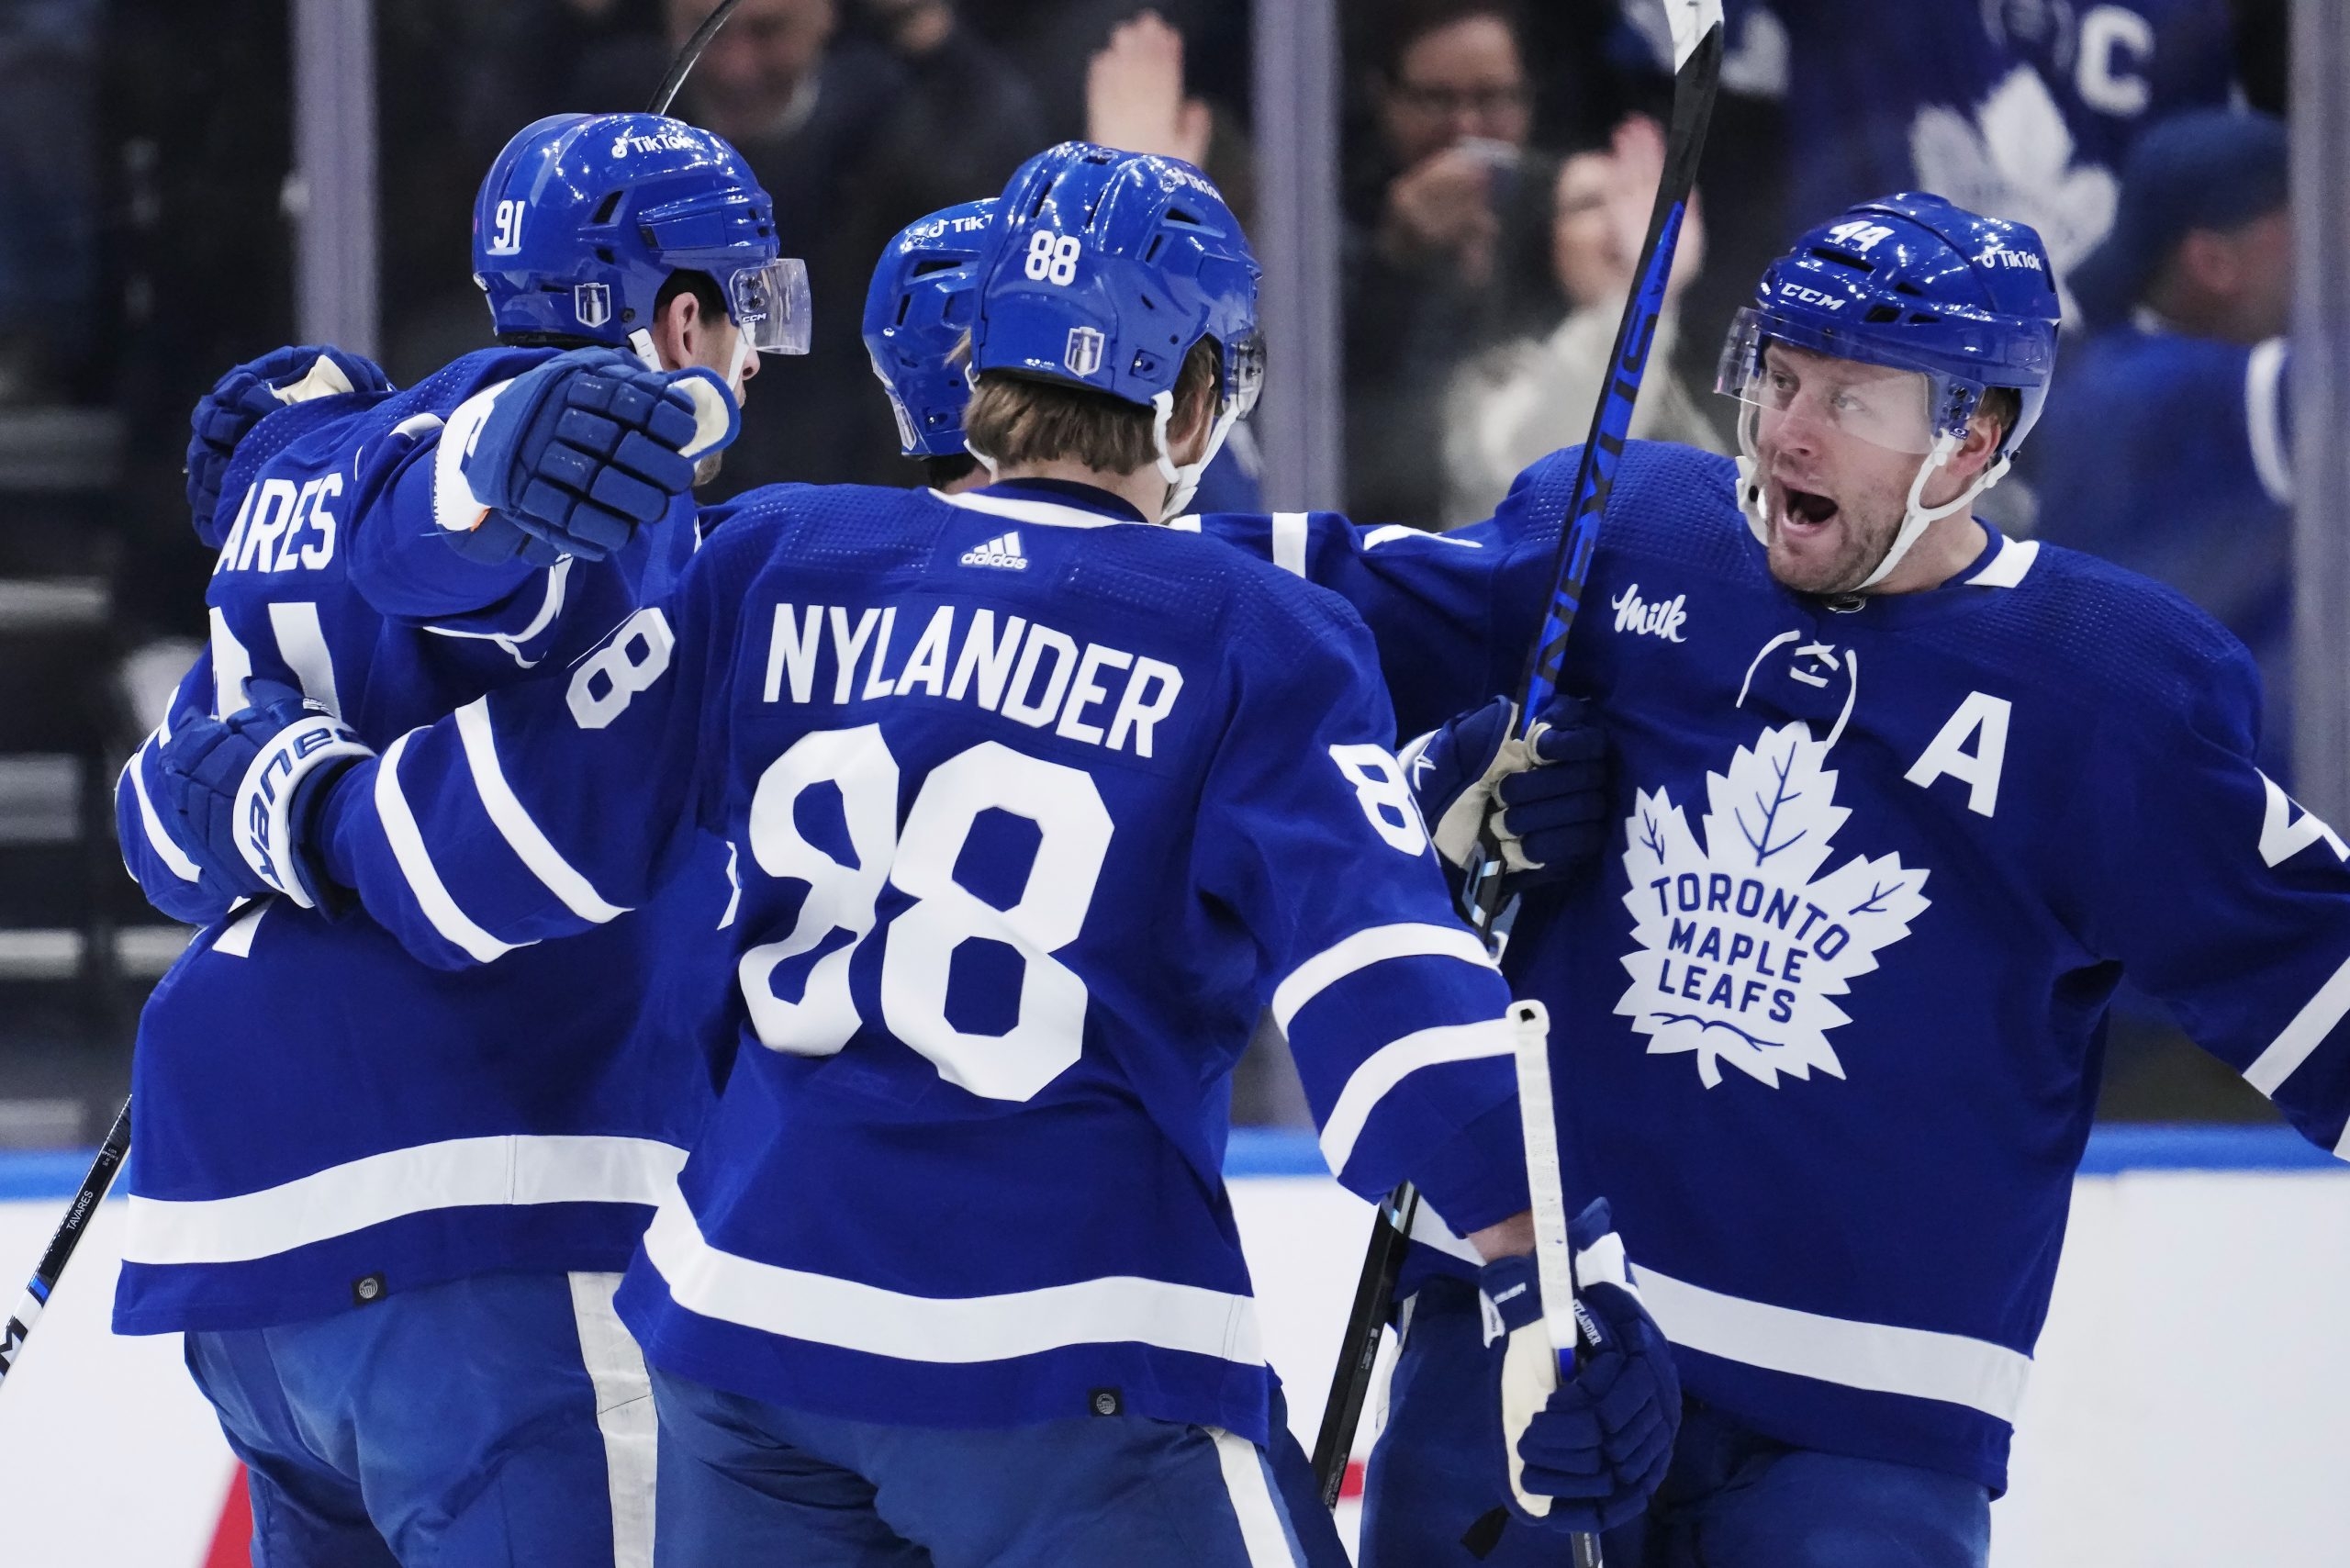 Maple Leafs win 4-1, end Lightning's 5-game winning streak